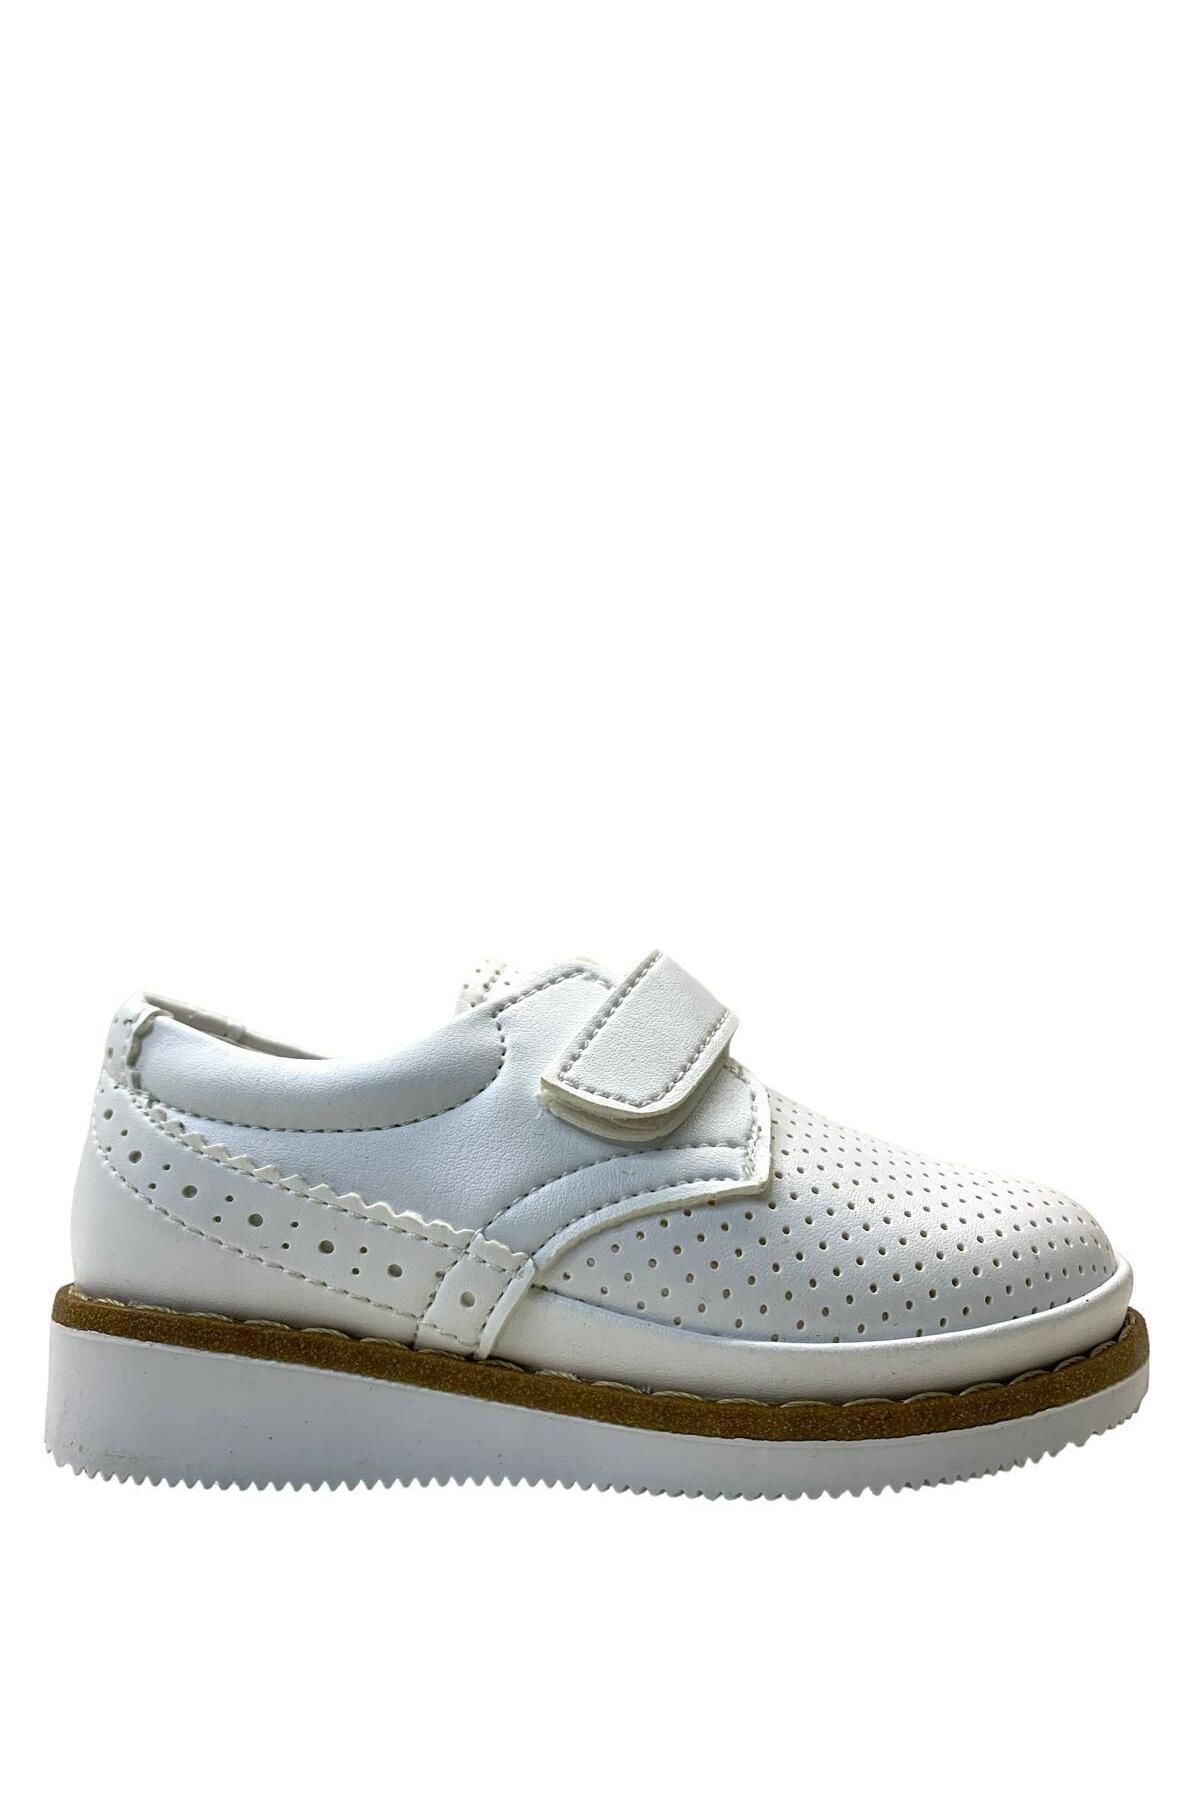 Tuğba Ortopedi 400 Ortopedik Erkek Çocuk Beyaz Klasik Ayakkabı